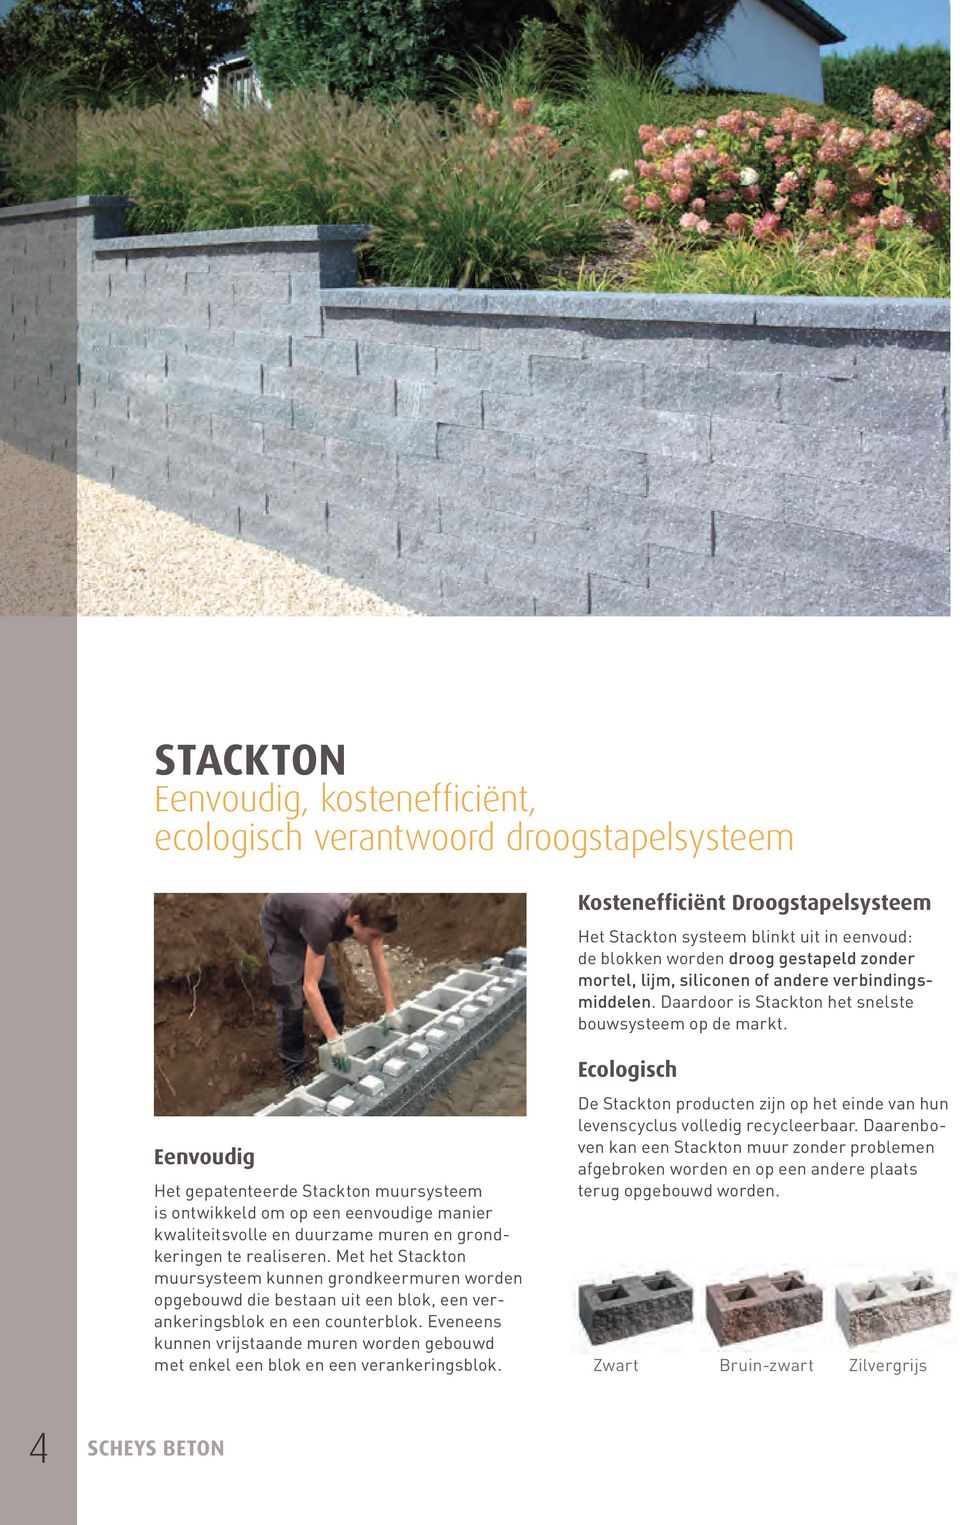 Eenvoudig Het gepatenteerde Stackton muursysteem is ontwikkeld om op een eenvoudige manier kwaliteitsvolle en duurzame muren en grondkeringen te realiseren.